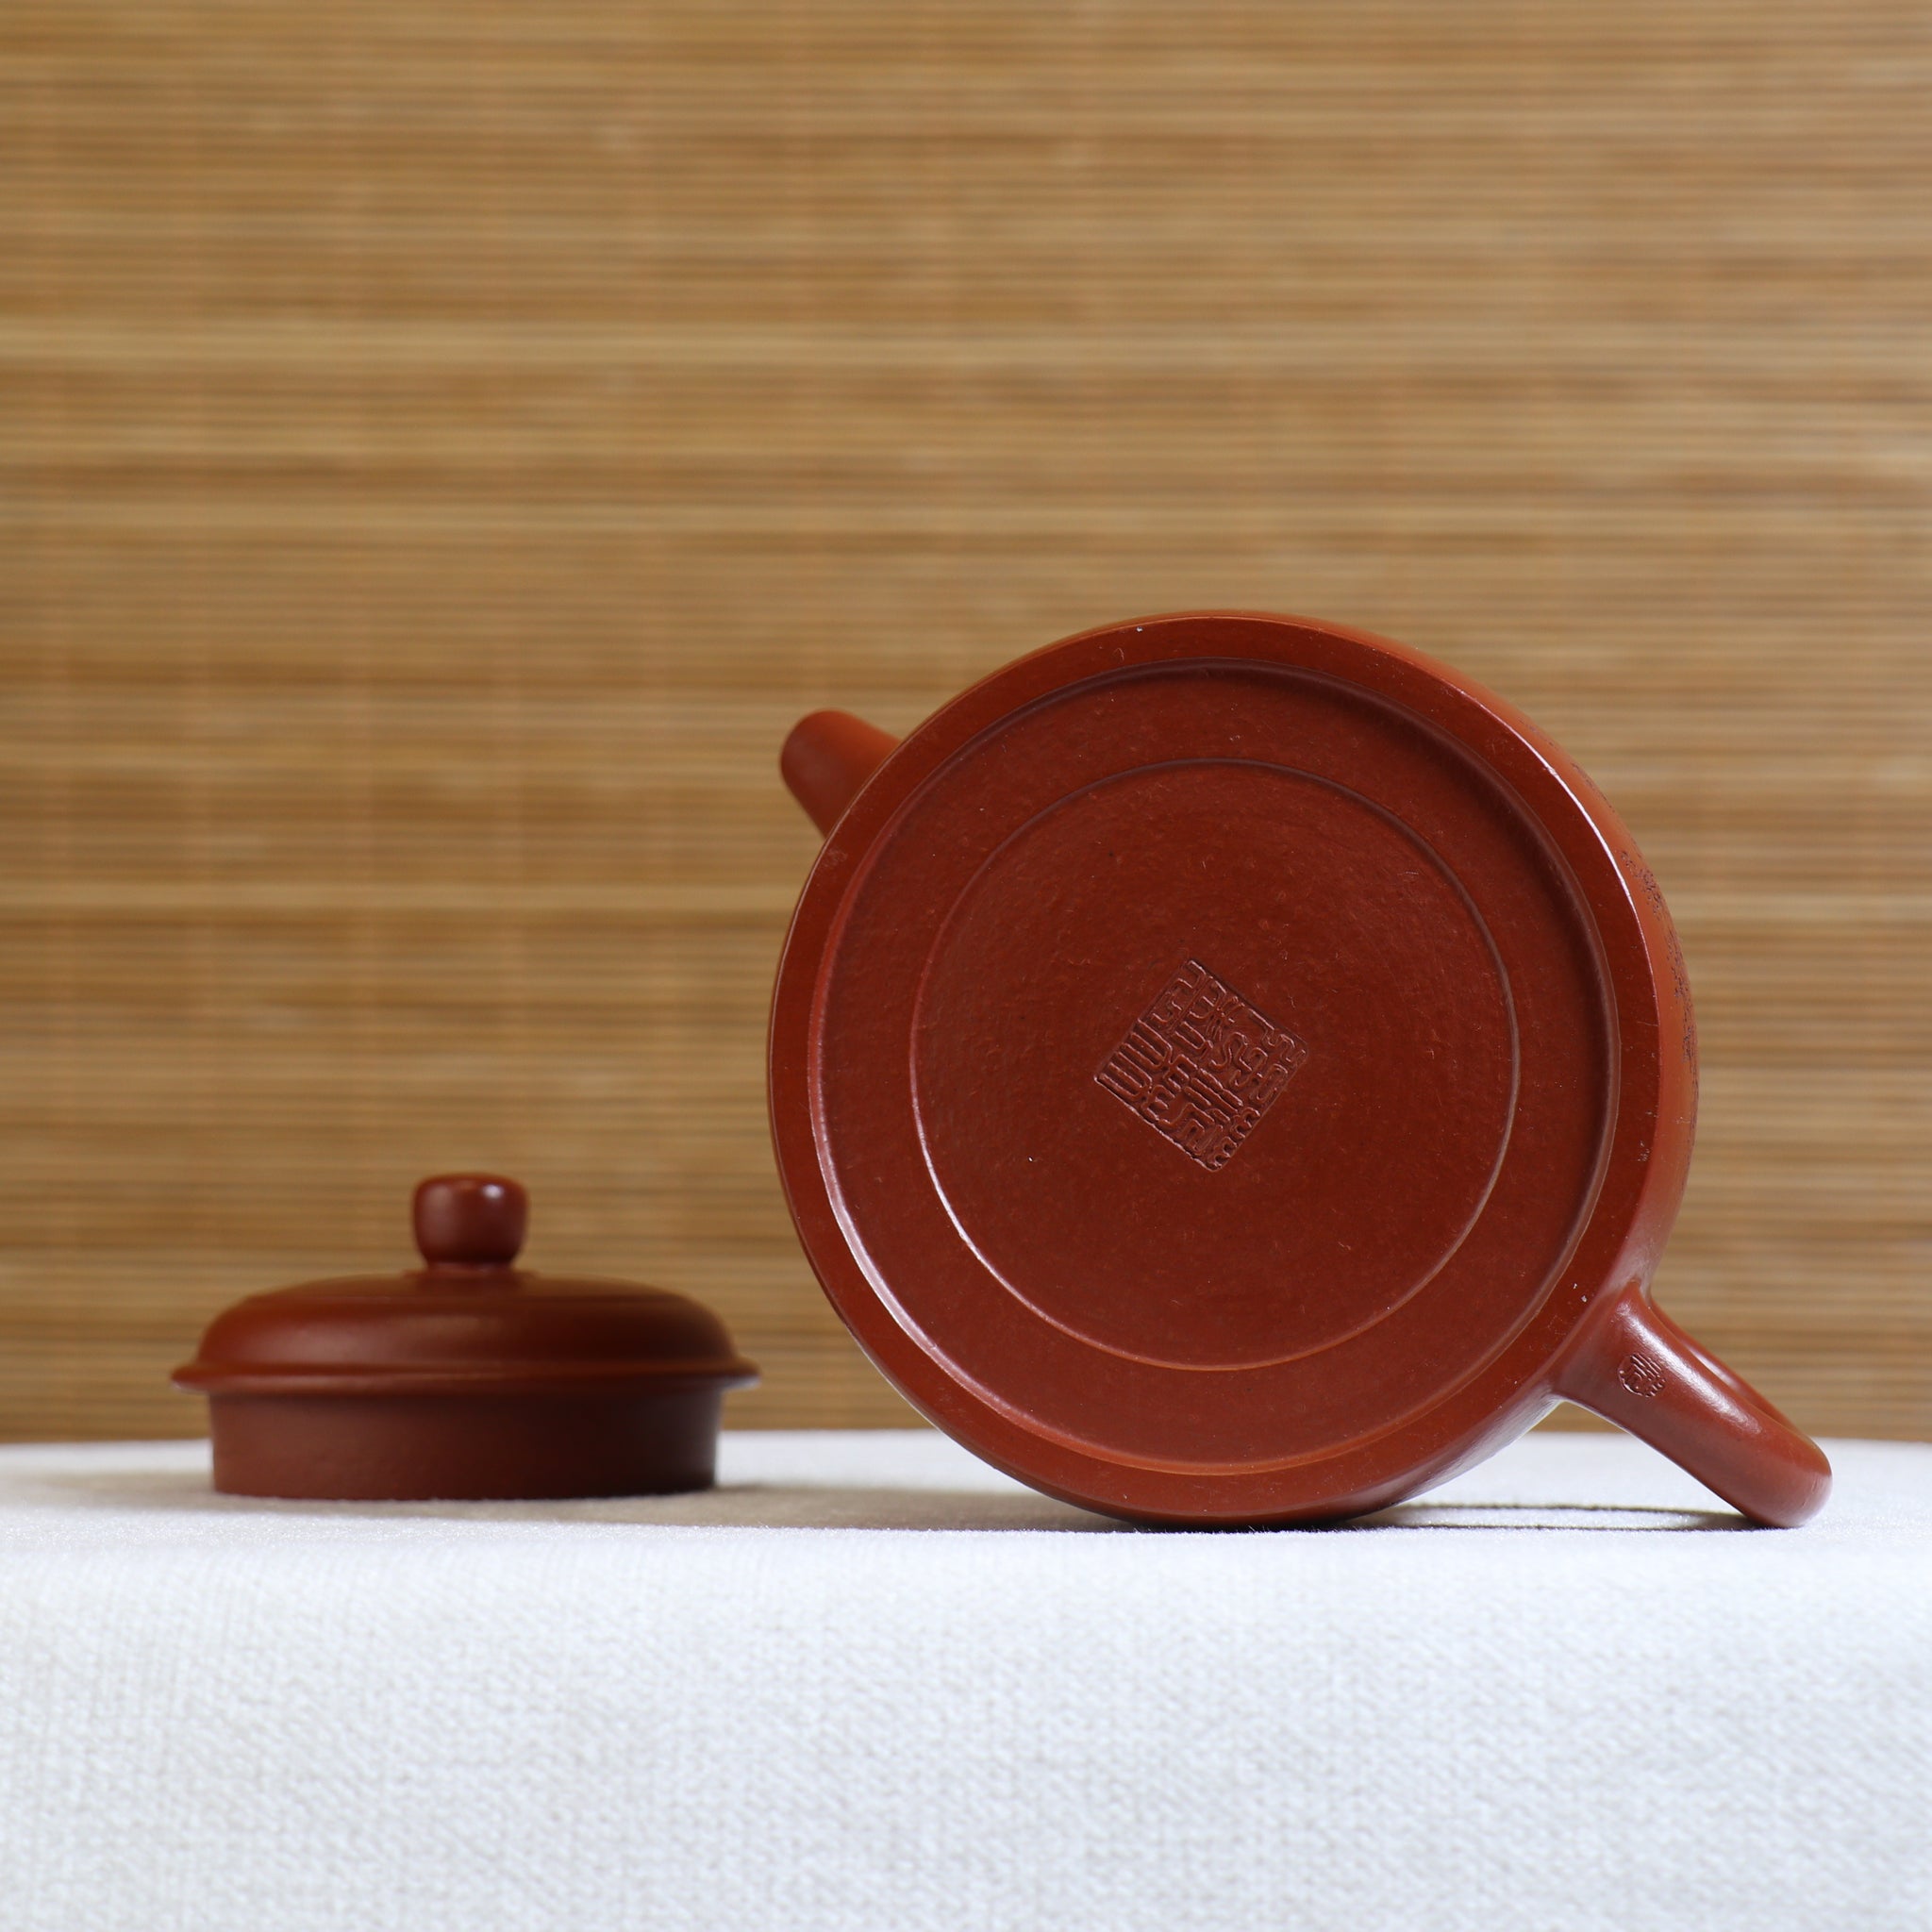 （已售出）【德鐘】大紅袍刻畫紫砂茶壺